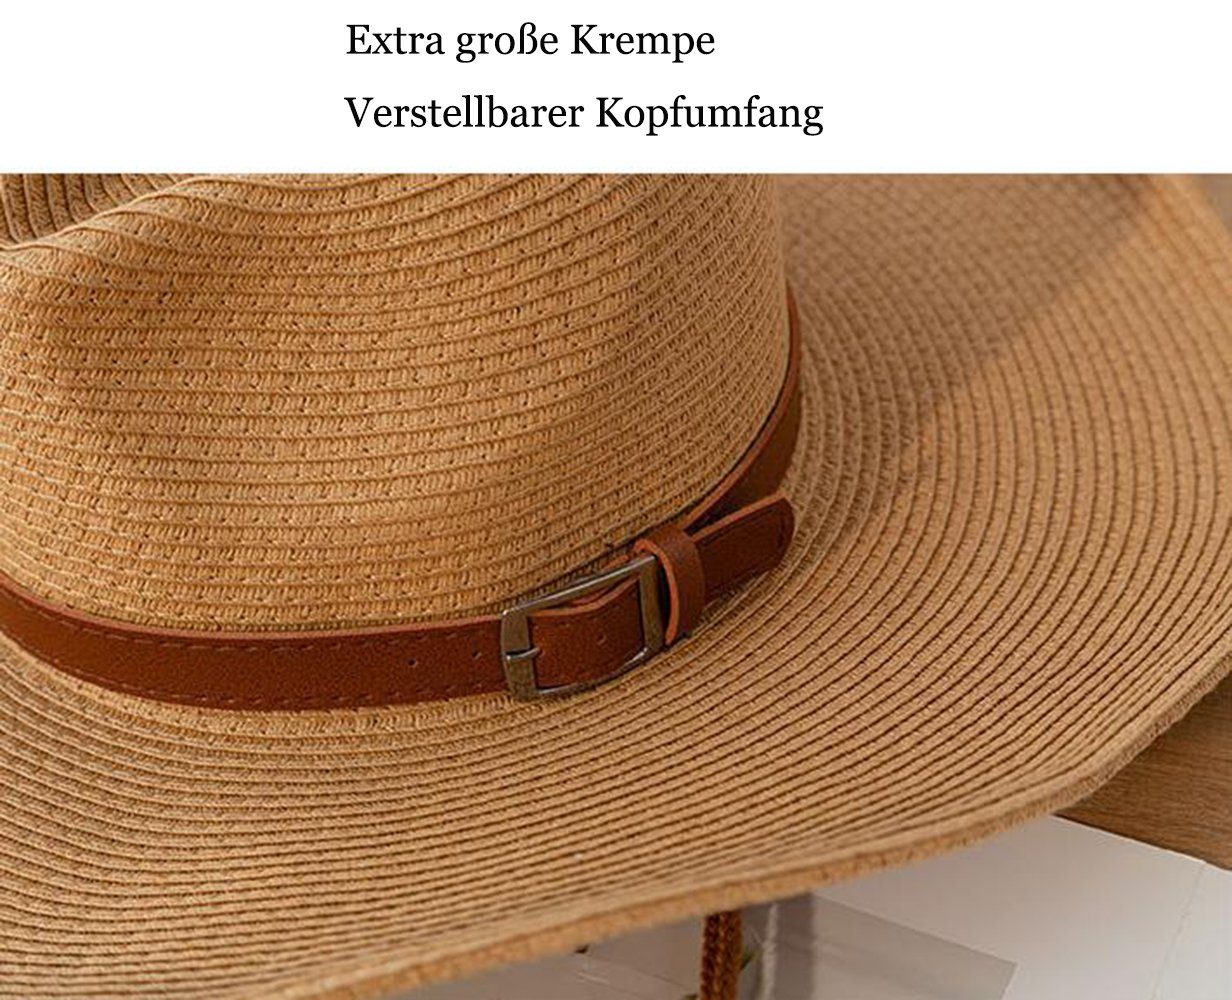 Sonnenhut Unisex Sommer Herren Cowboyhut beige Panama GelldG Strohhut Stroh Sonnenhut Hut